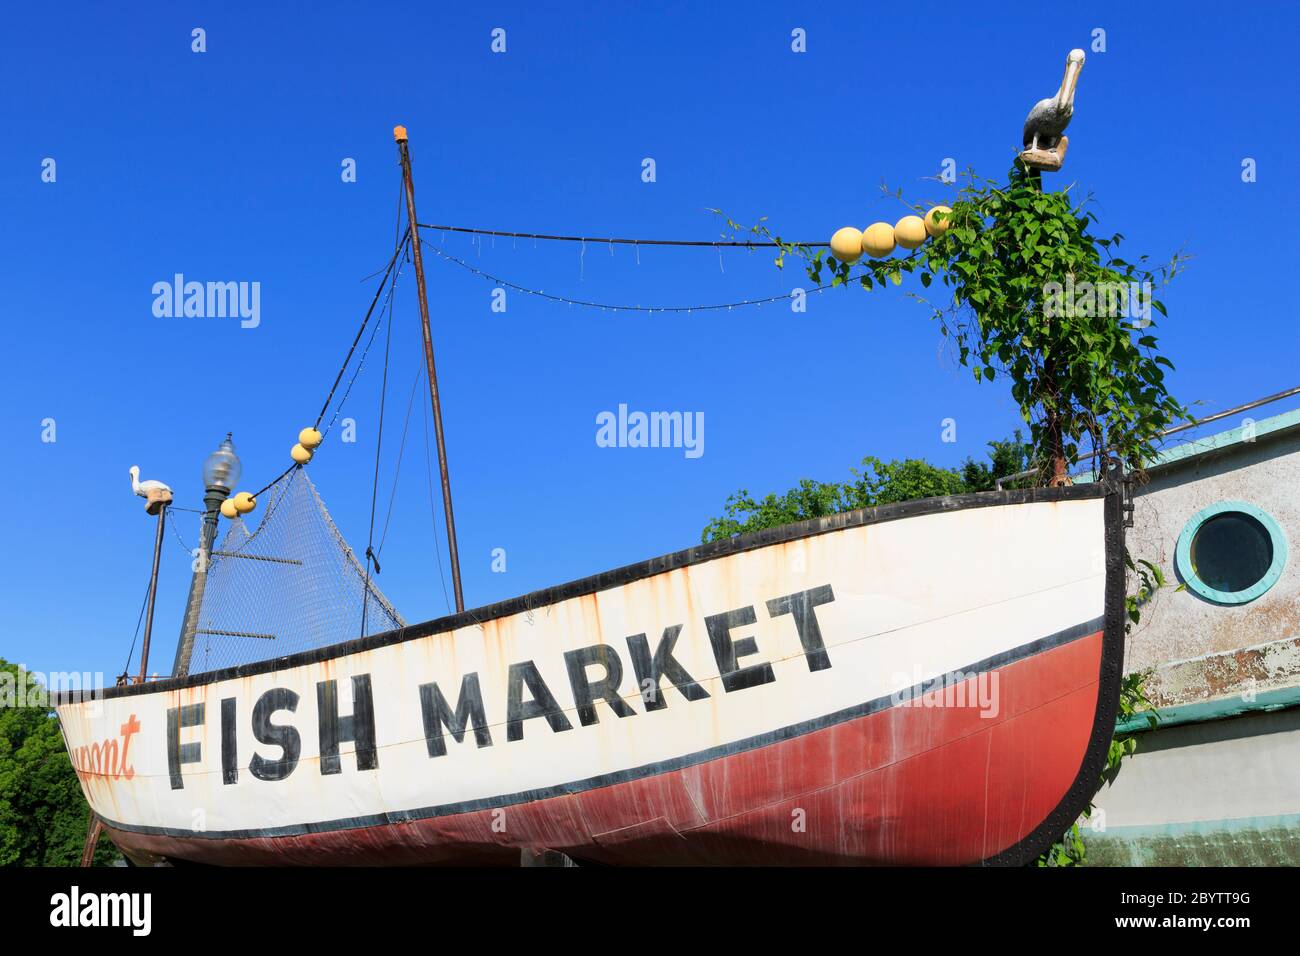 Fish Market, Shreveport, Louisiana, USA Stock Photo